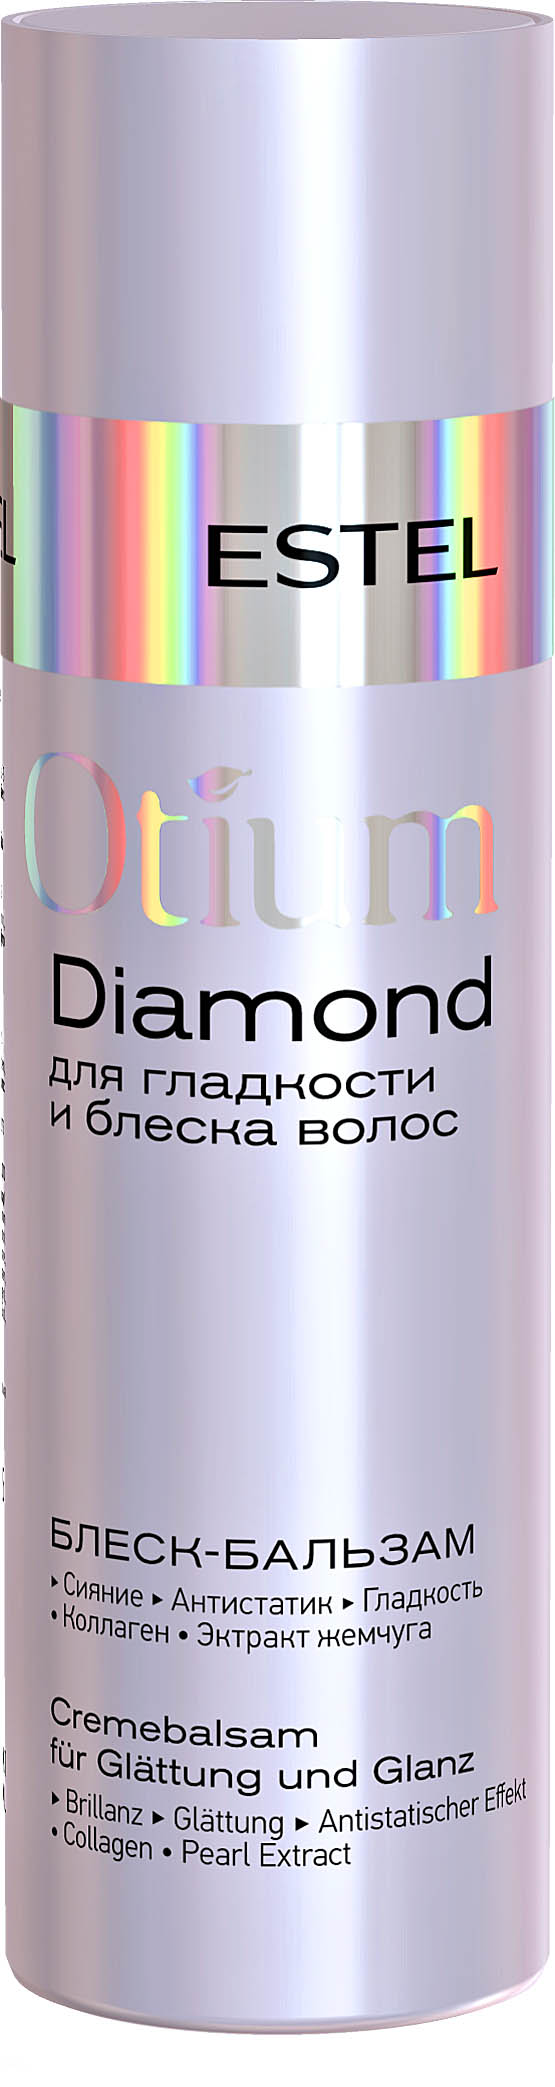 Бальзам-блеск для гладкости и блеска волос OTIUM DIAMOND, 200 мл